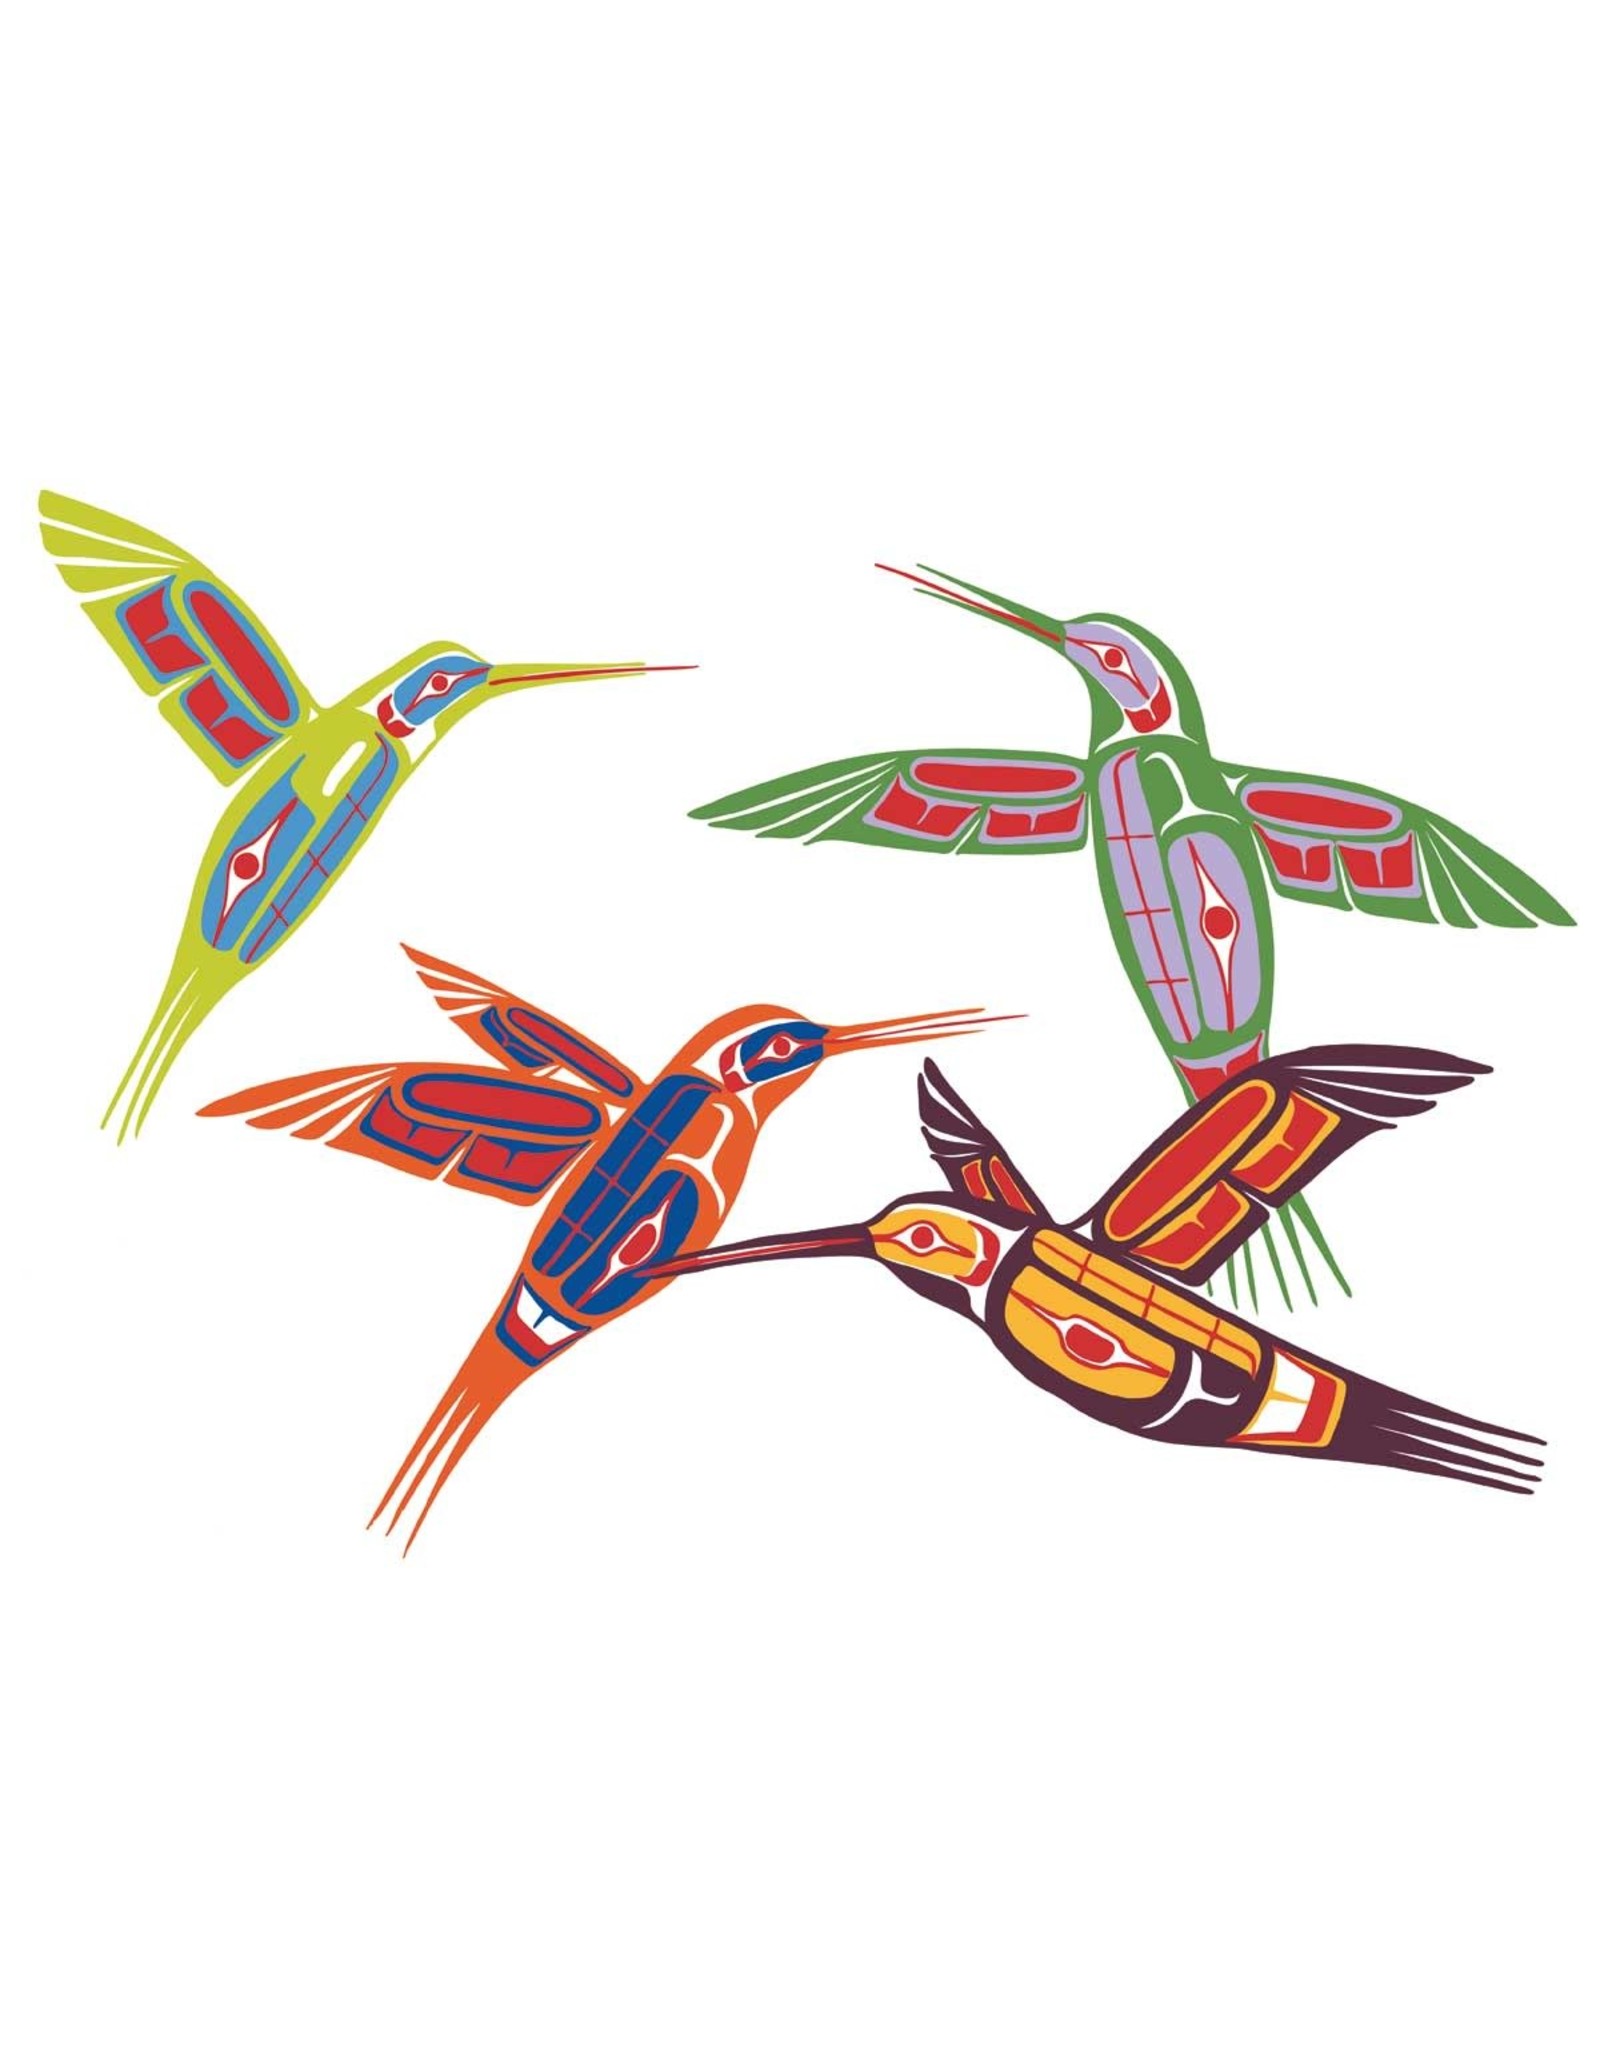 Four Hummingbirds par Ben Houstie Edition Limitée